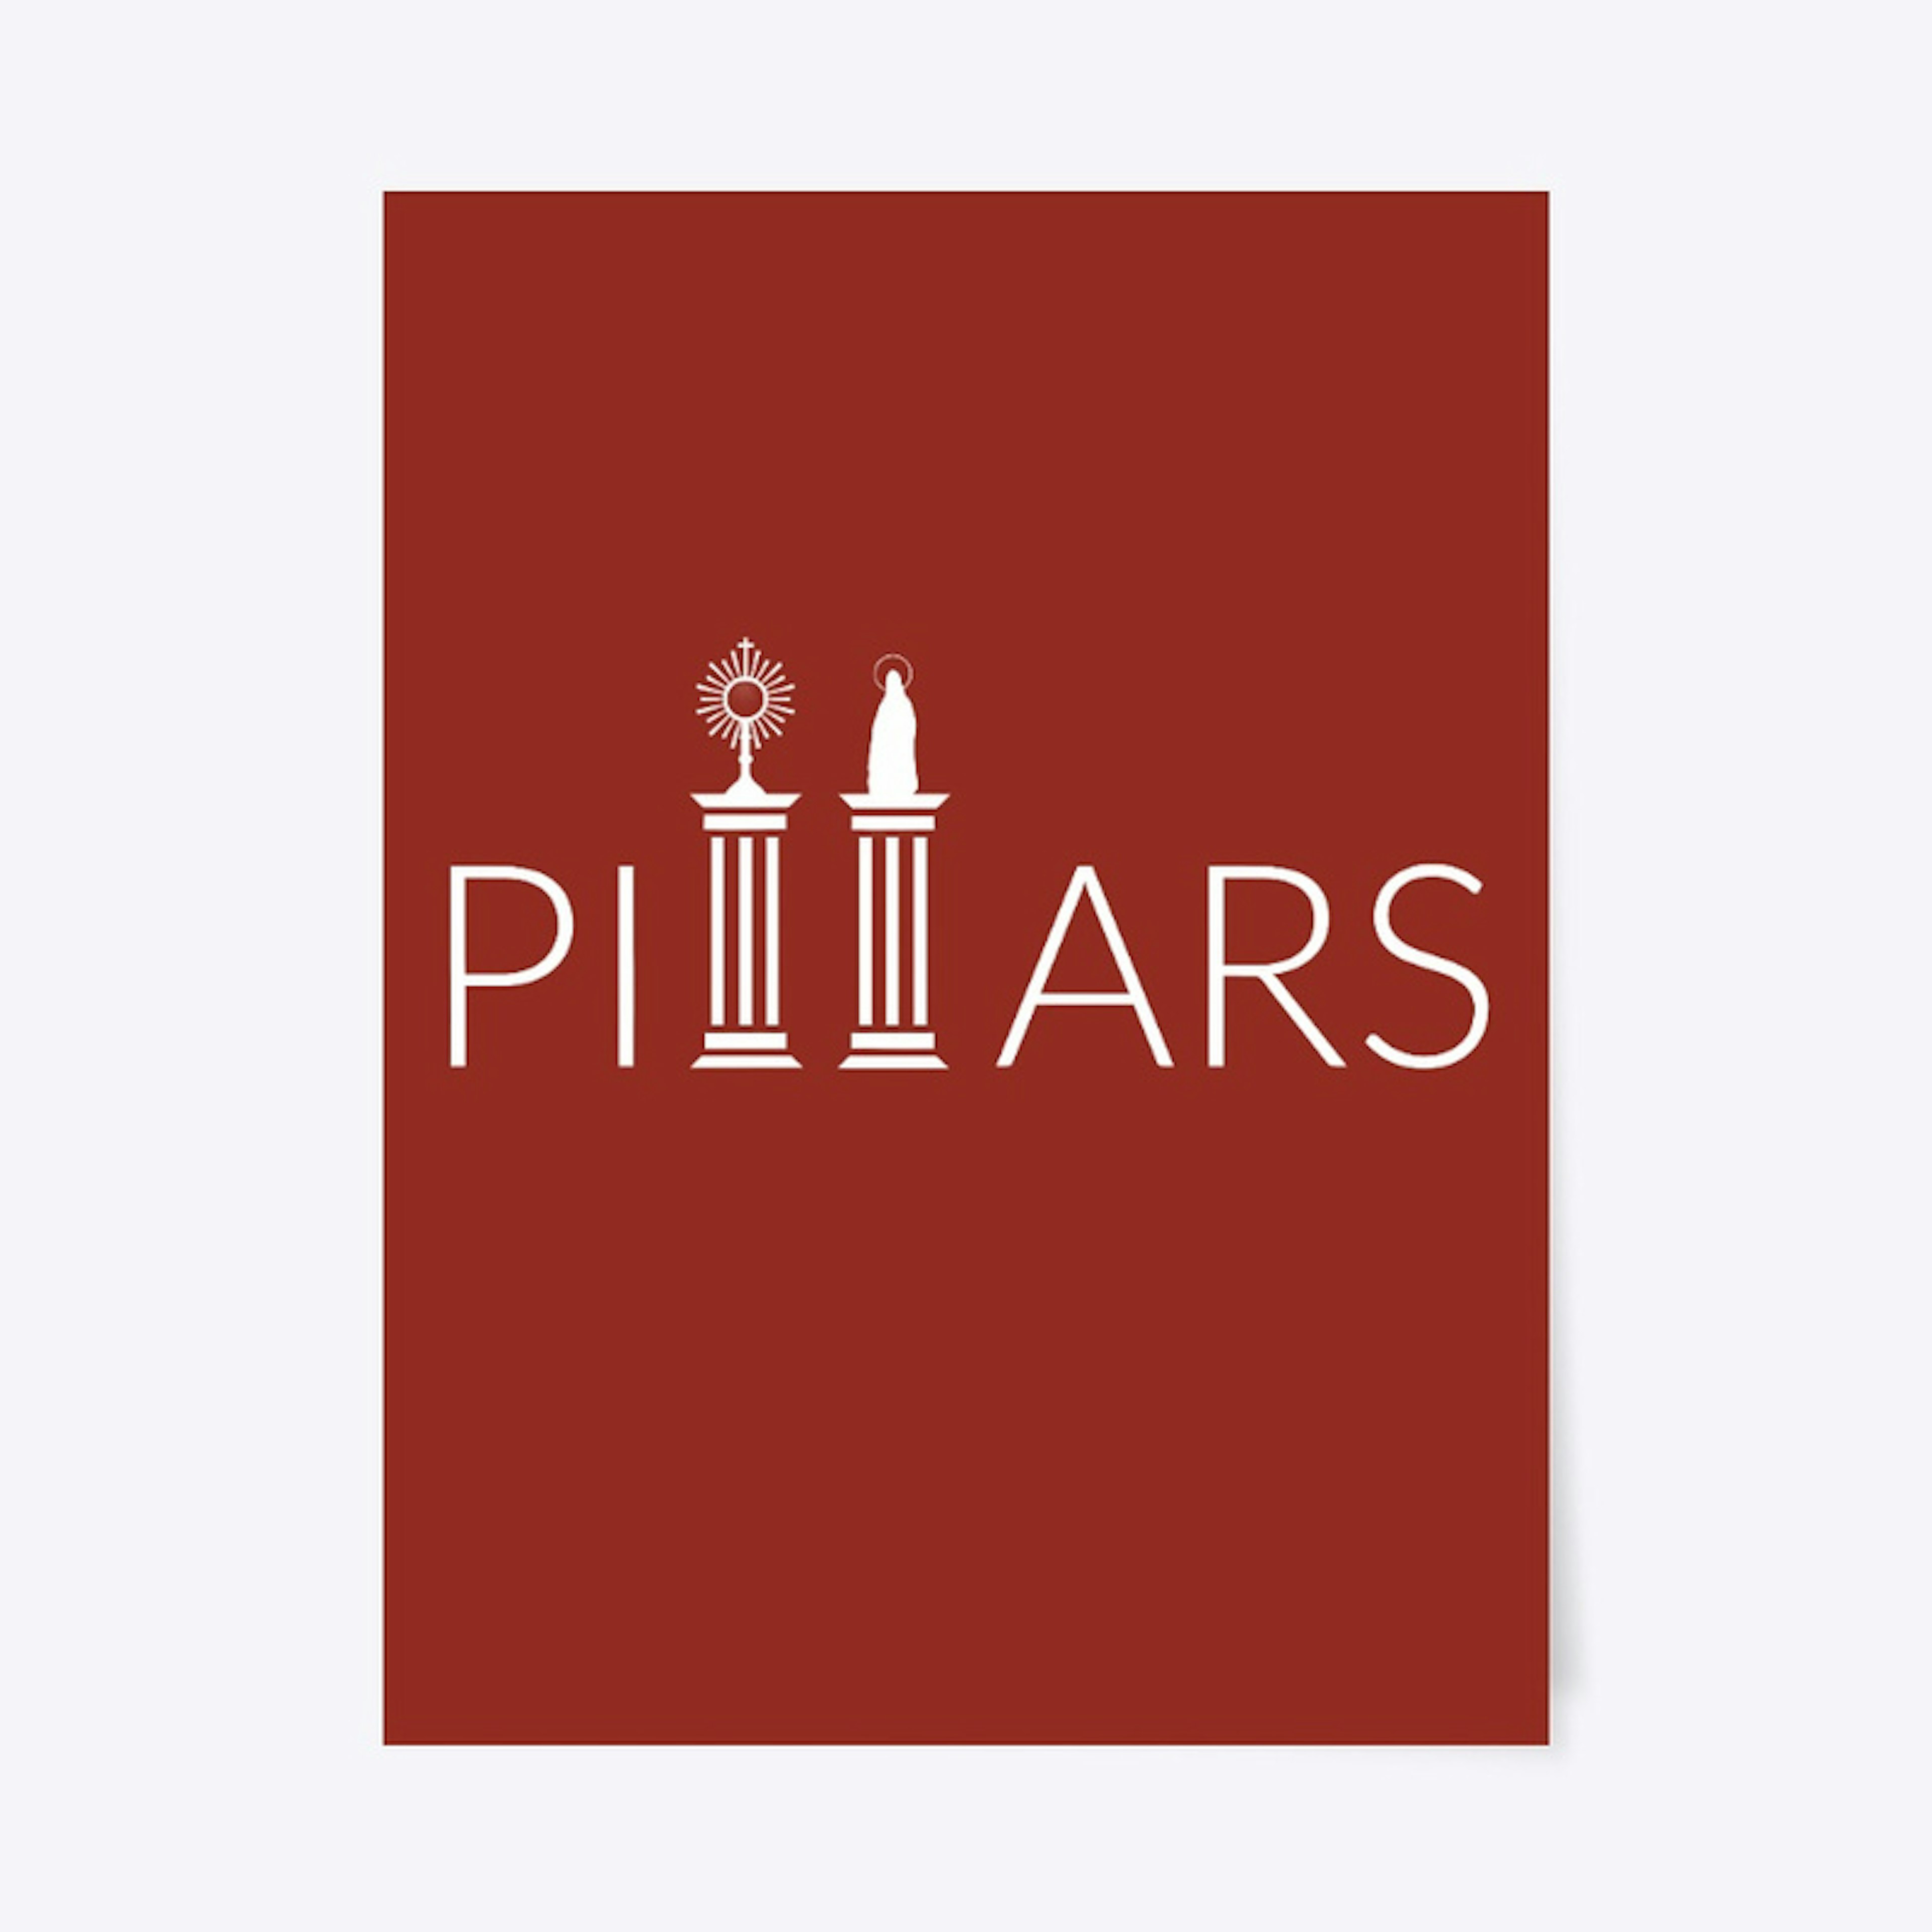 2 Pillars